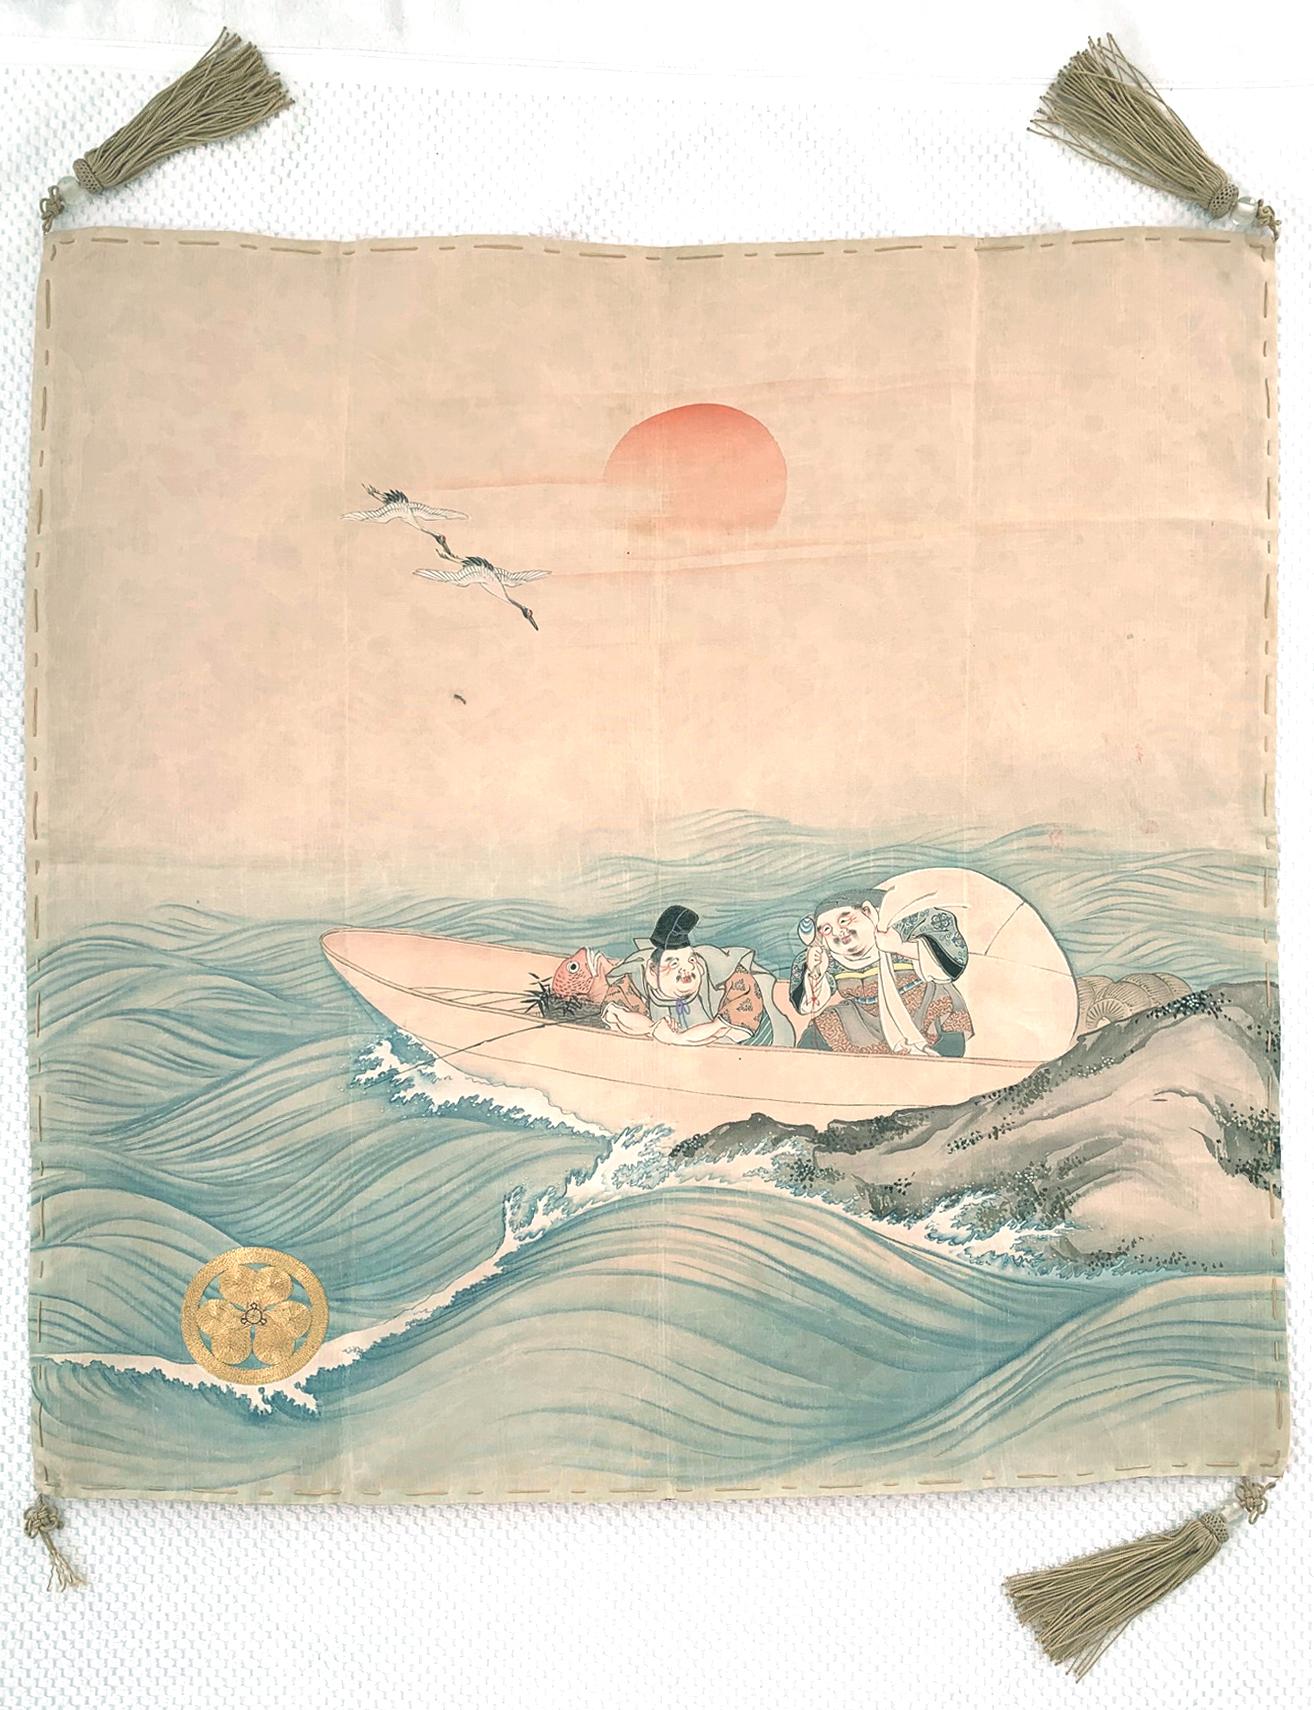 Panneau Fukusa en soie japonaise, vers la fin du 19e siècle ou le début du 20e siècle, de la période Meiji. La façade a été magnifiquement décorée avec le Yuzen-zome, une technique de teinture par résistance à forte intensité de travail, inventée